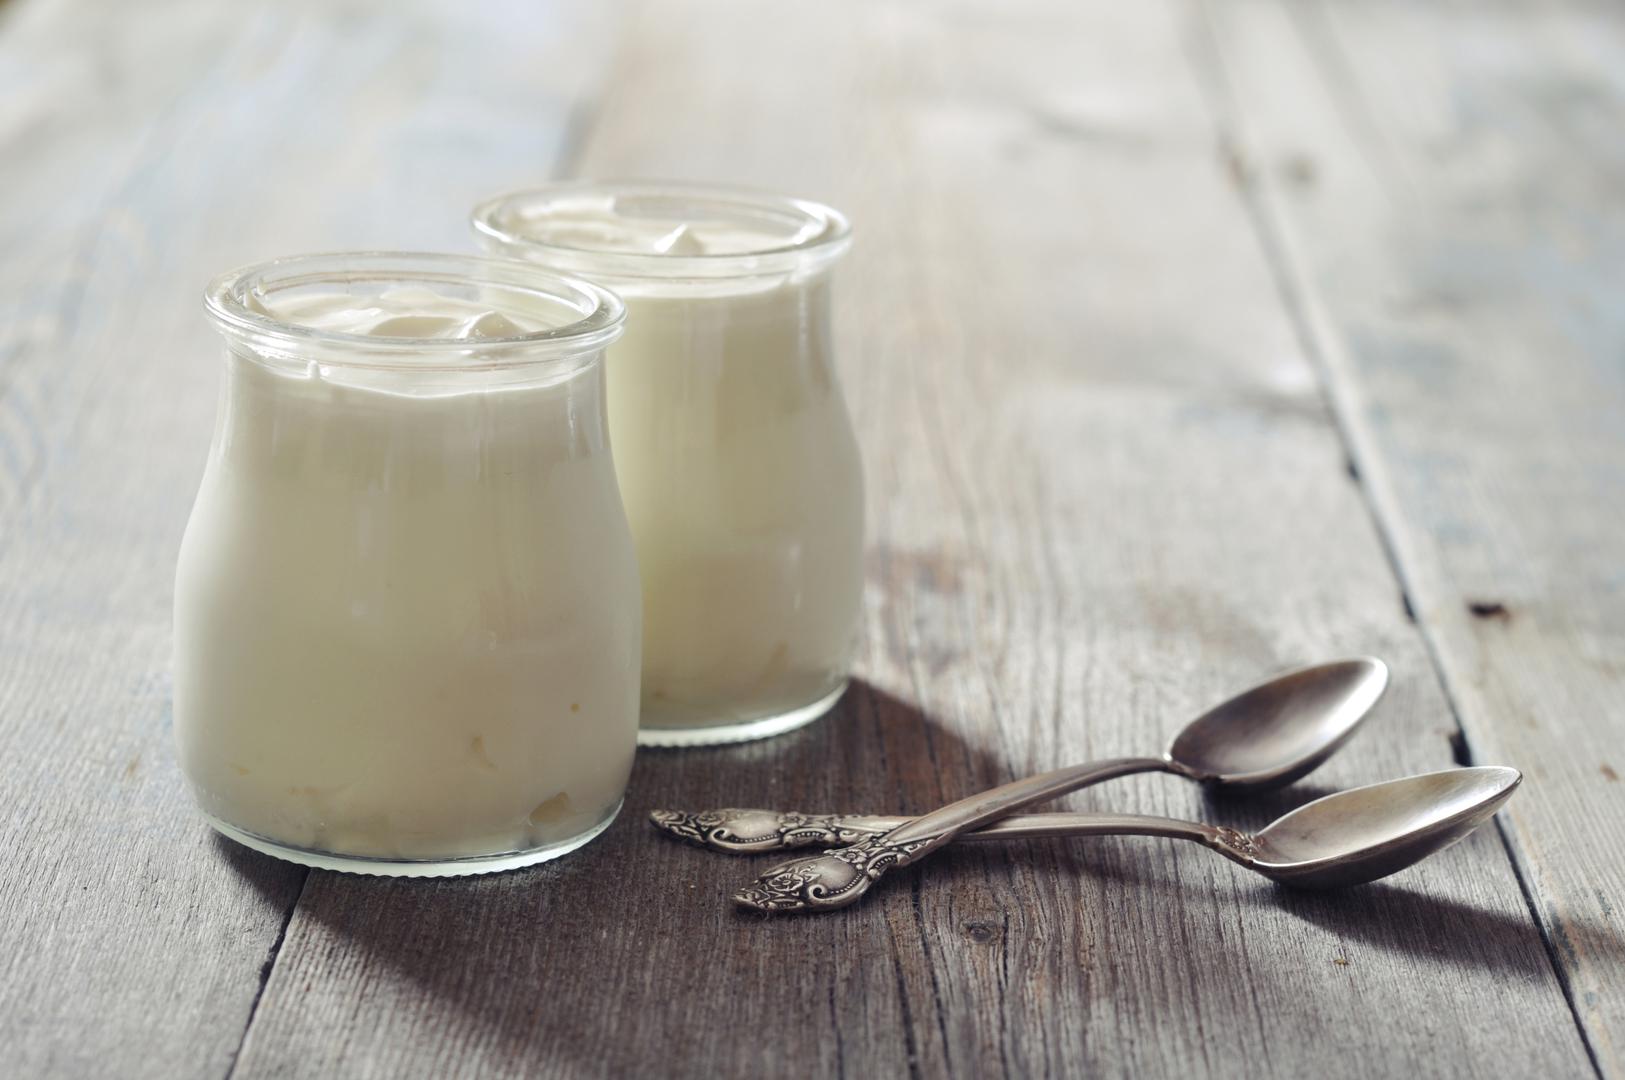 Jogurt: Kalcij, ključan element za jake kosti, i proteini, dobri za održavanje mišića, nalaze se u jogurtu. Međutim, iako je prirodni jogurt označen kao prerađen, mnoge vrste koje se prodaju u trgovinama su ultraprerađene. Neki sadrže umjetne sastojke, stabilizatore i konzervanse namijenjene poboljšanju okusa, boje i roka trajanja. Drugi, koji tvrde da imaju nizak udio šećera, umjesto toga koriste umjetna sladila poput aspartama, koji je klasificiran kao moguće kancerogen za ljude. NHS preporučuje da se odlučite za nezaslađene varijante jogurta s niskim udjelom masti.